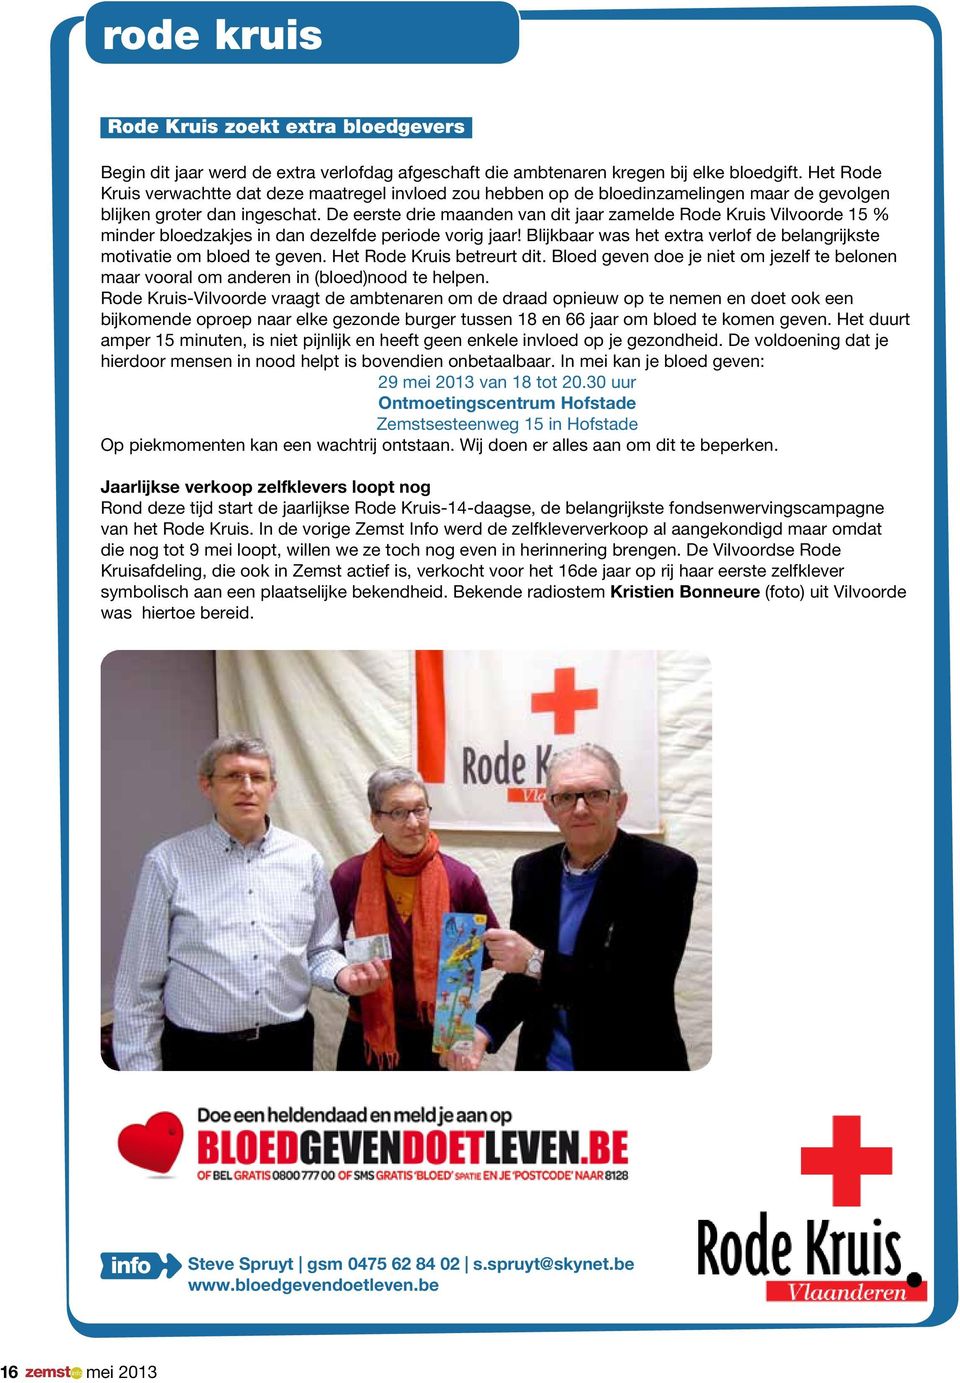 De eerste drie maanden van dit jaar zamelde Rode Kruis Vilvoorde 15 % minder bloedzakjes in dan dezelfde periode vorig jaar!